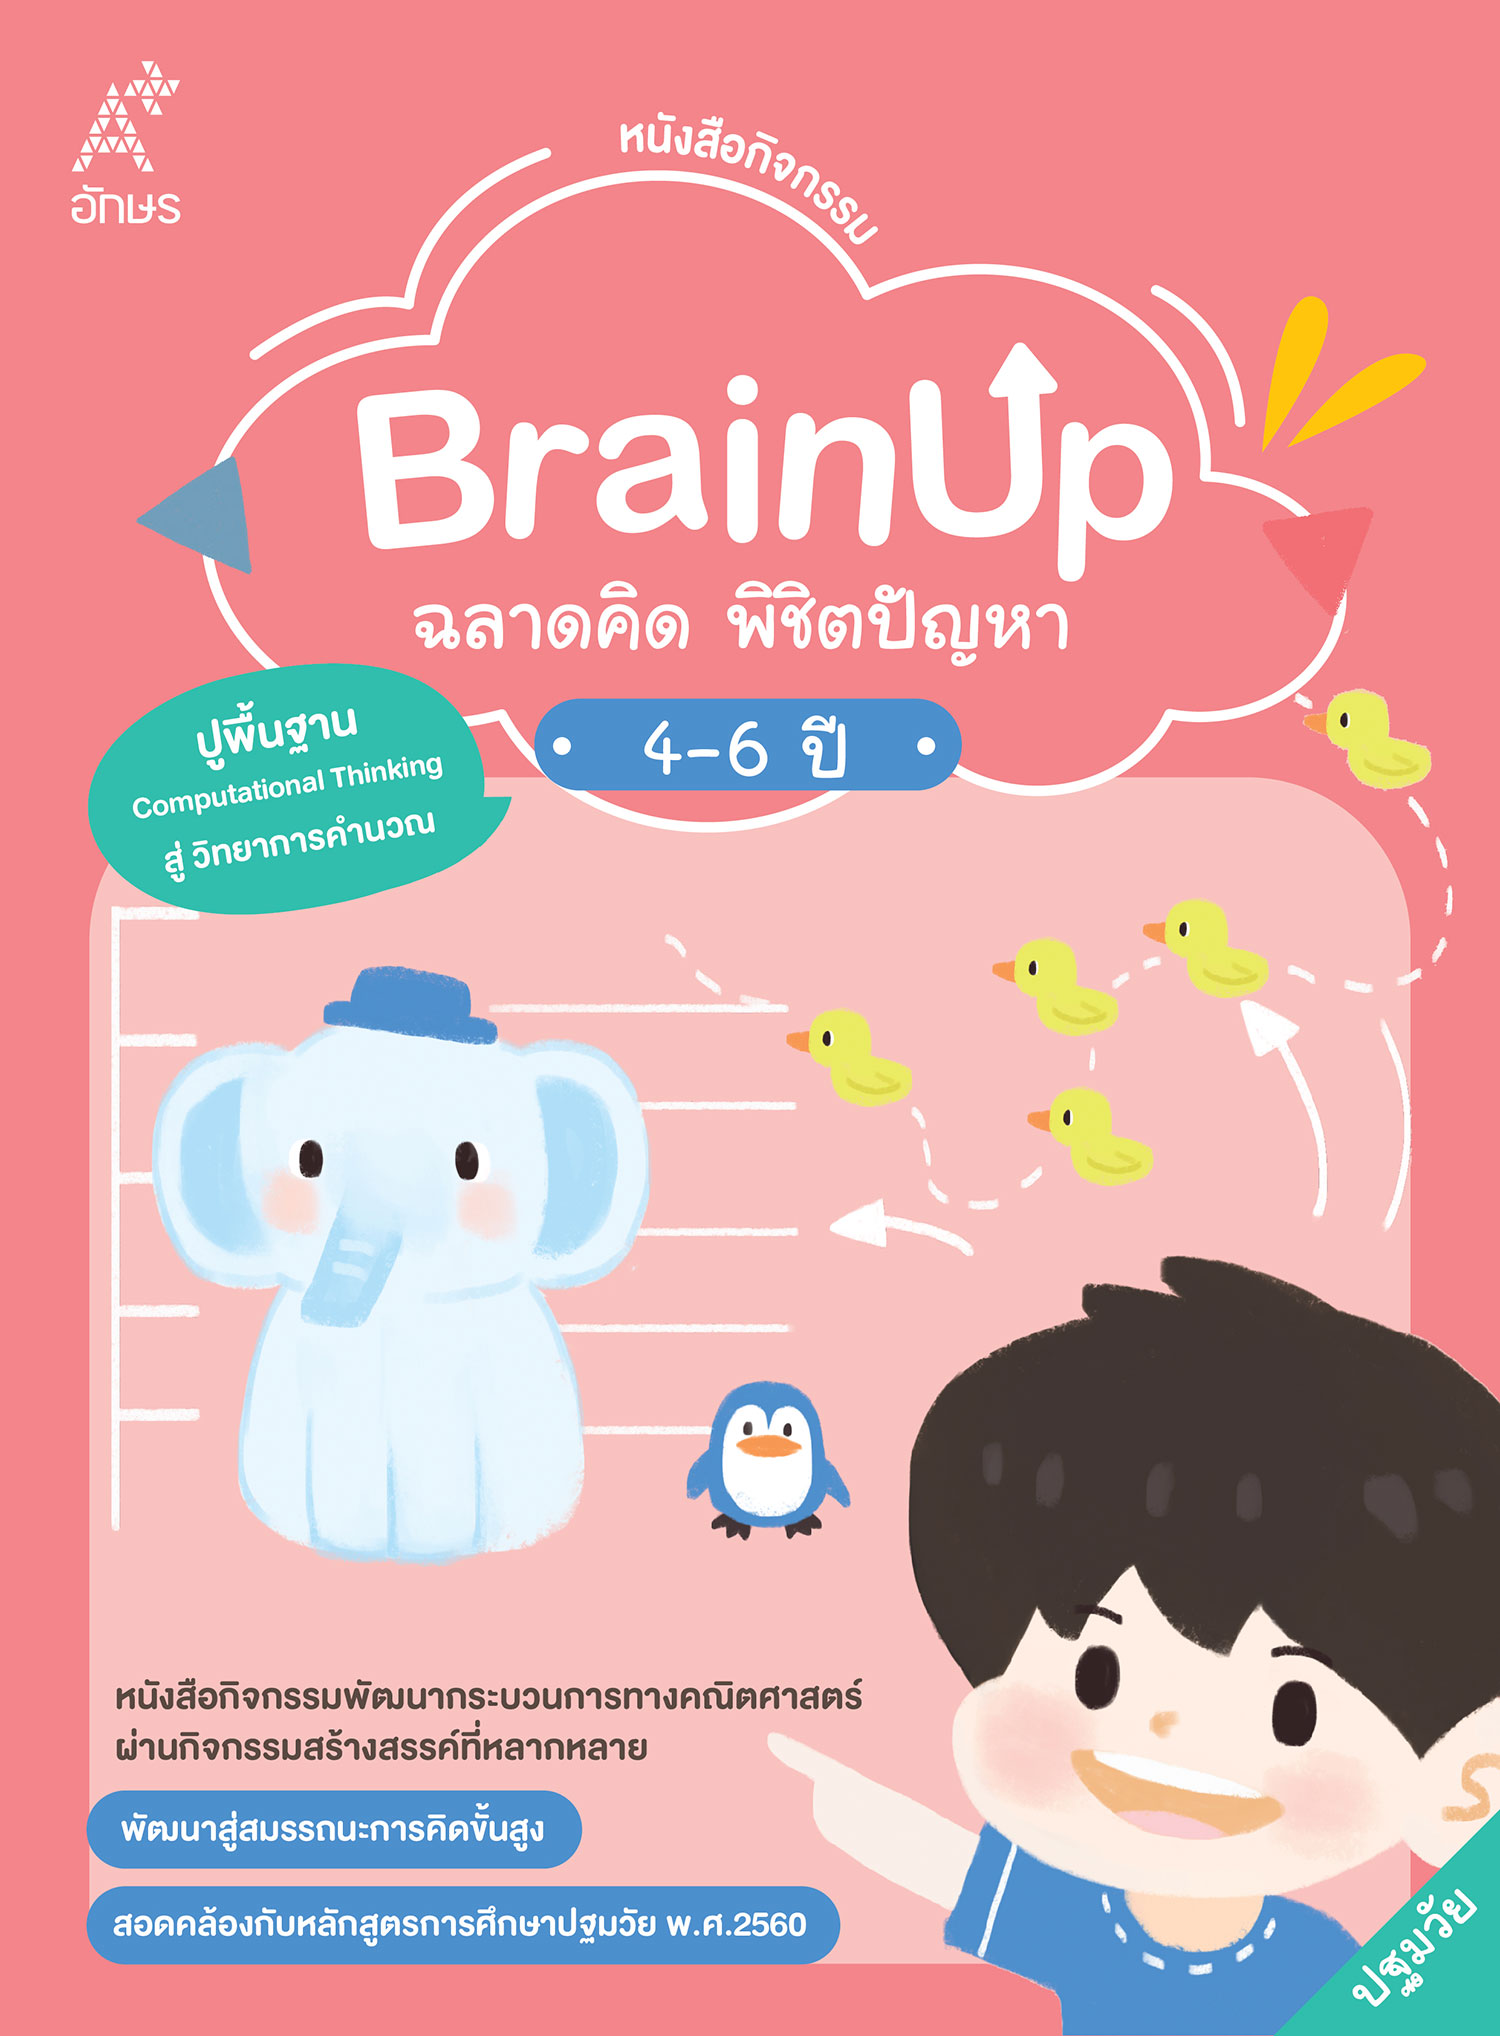 หนังสือกิจกรรม BrainUp ฉลาดคิด พิชิตปัญหา อายุ 4-6 ปี